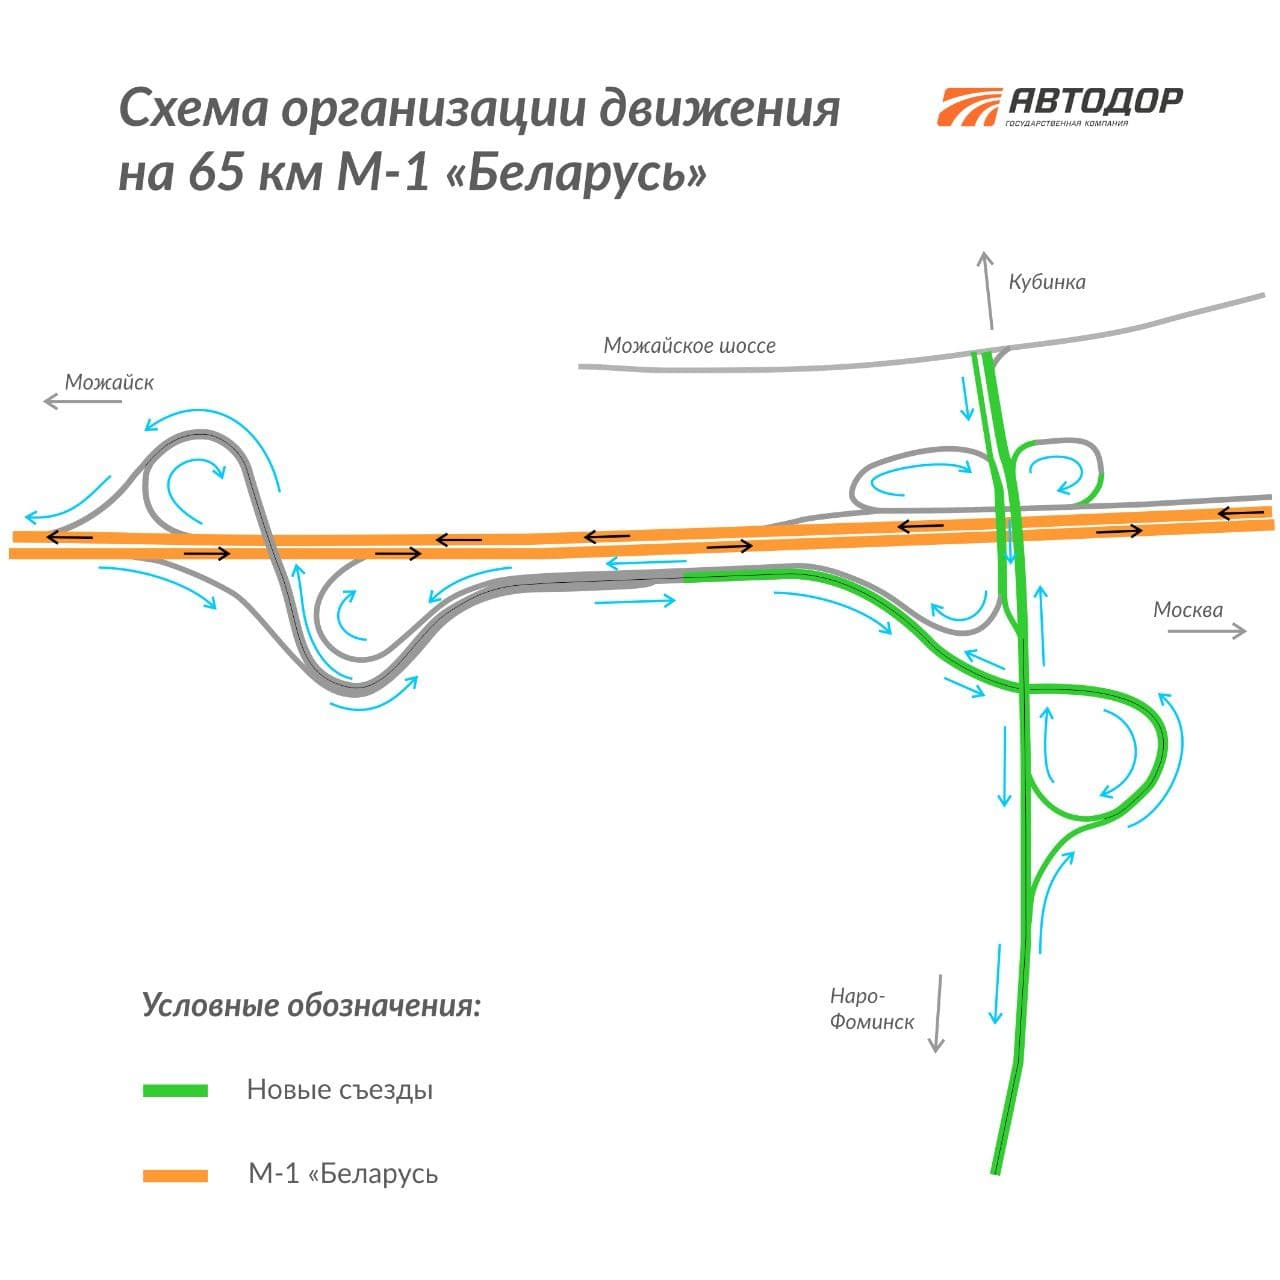 Открыто движение по путепроводам над трассой М-1 "Беларусь" в Подмосковье